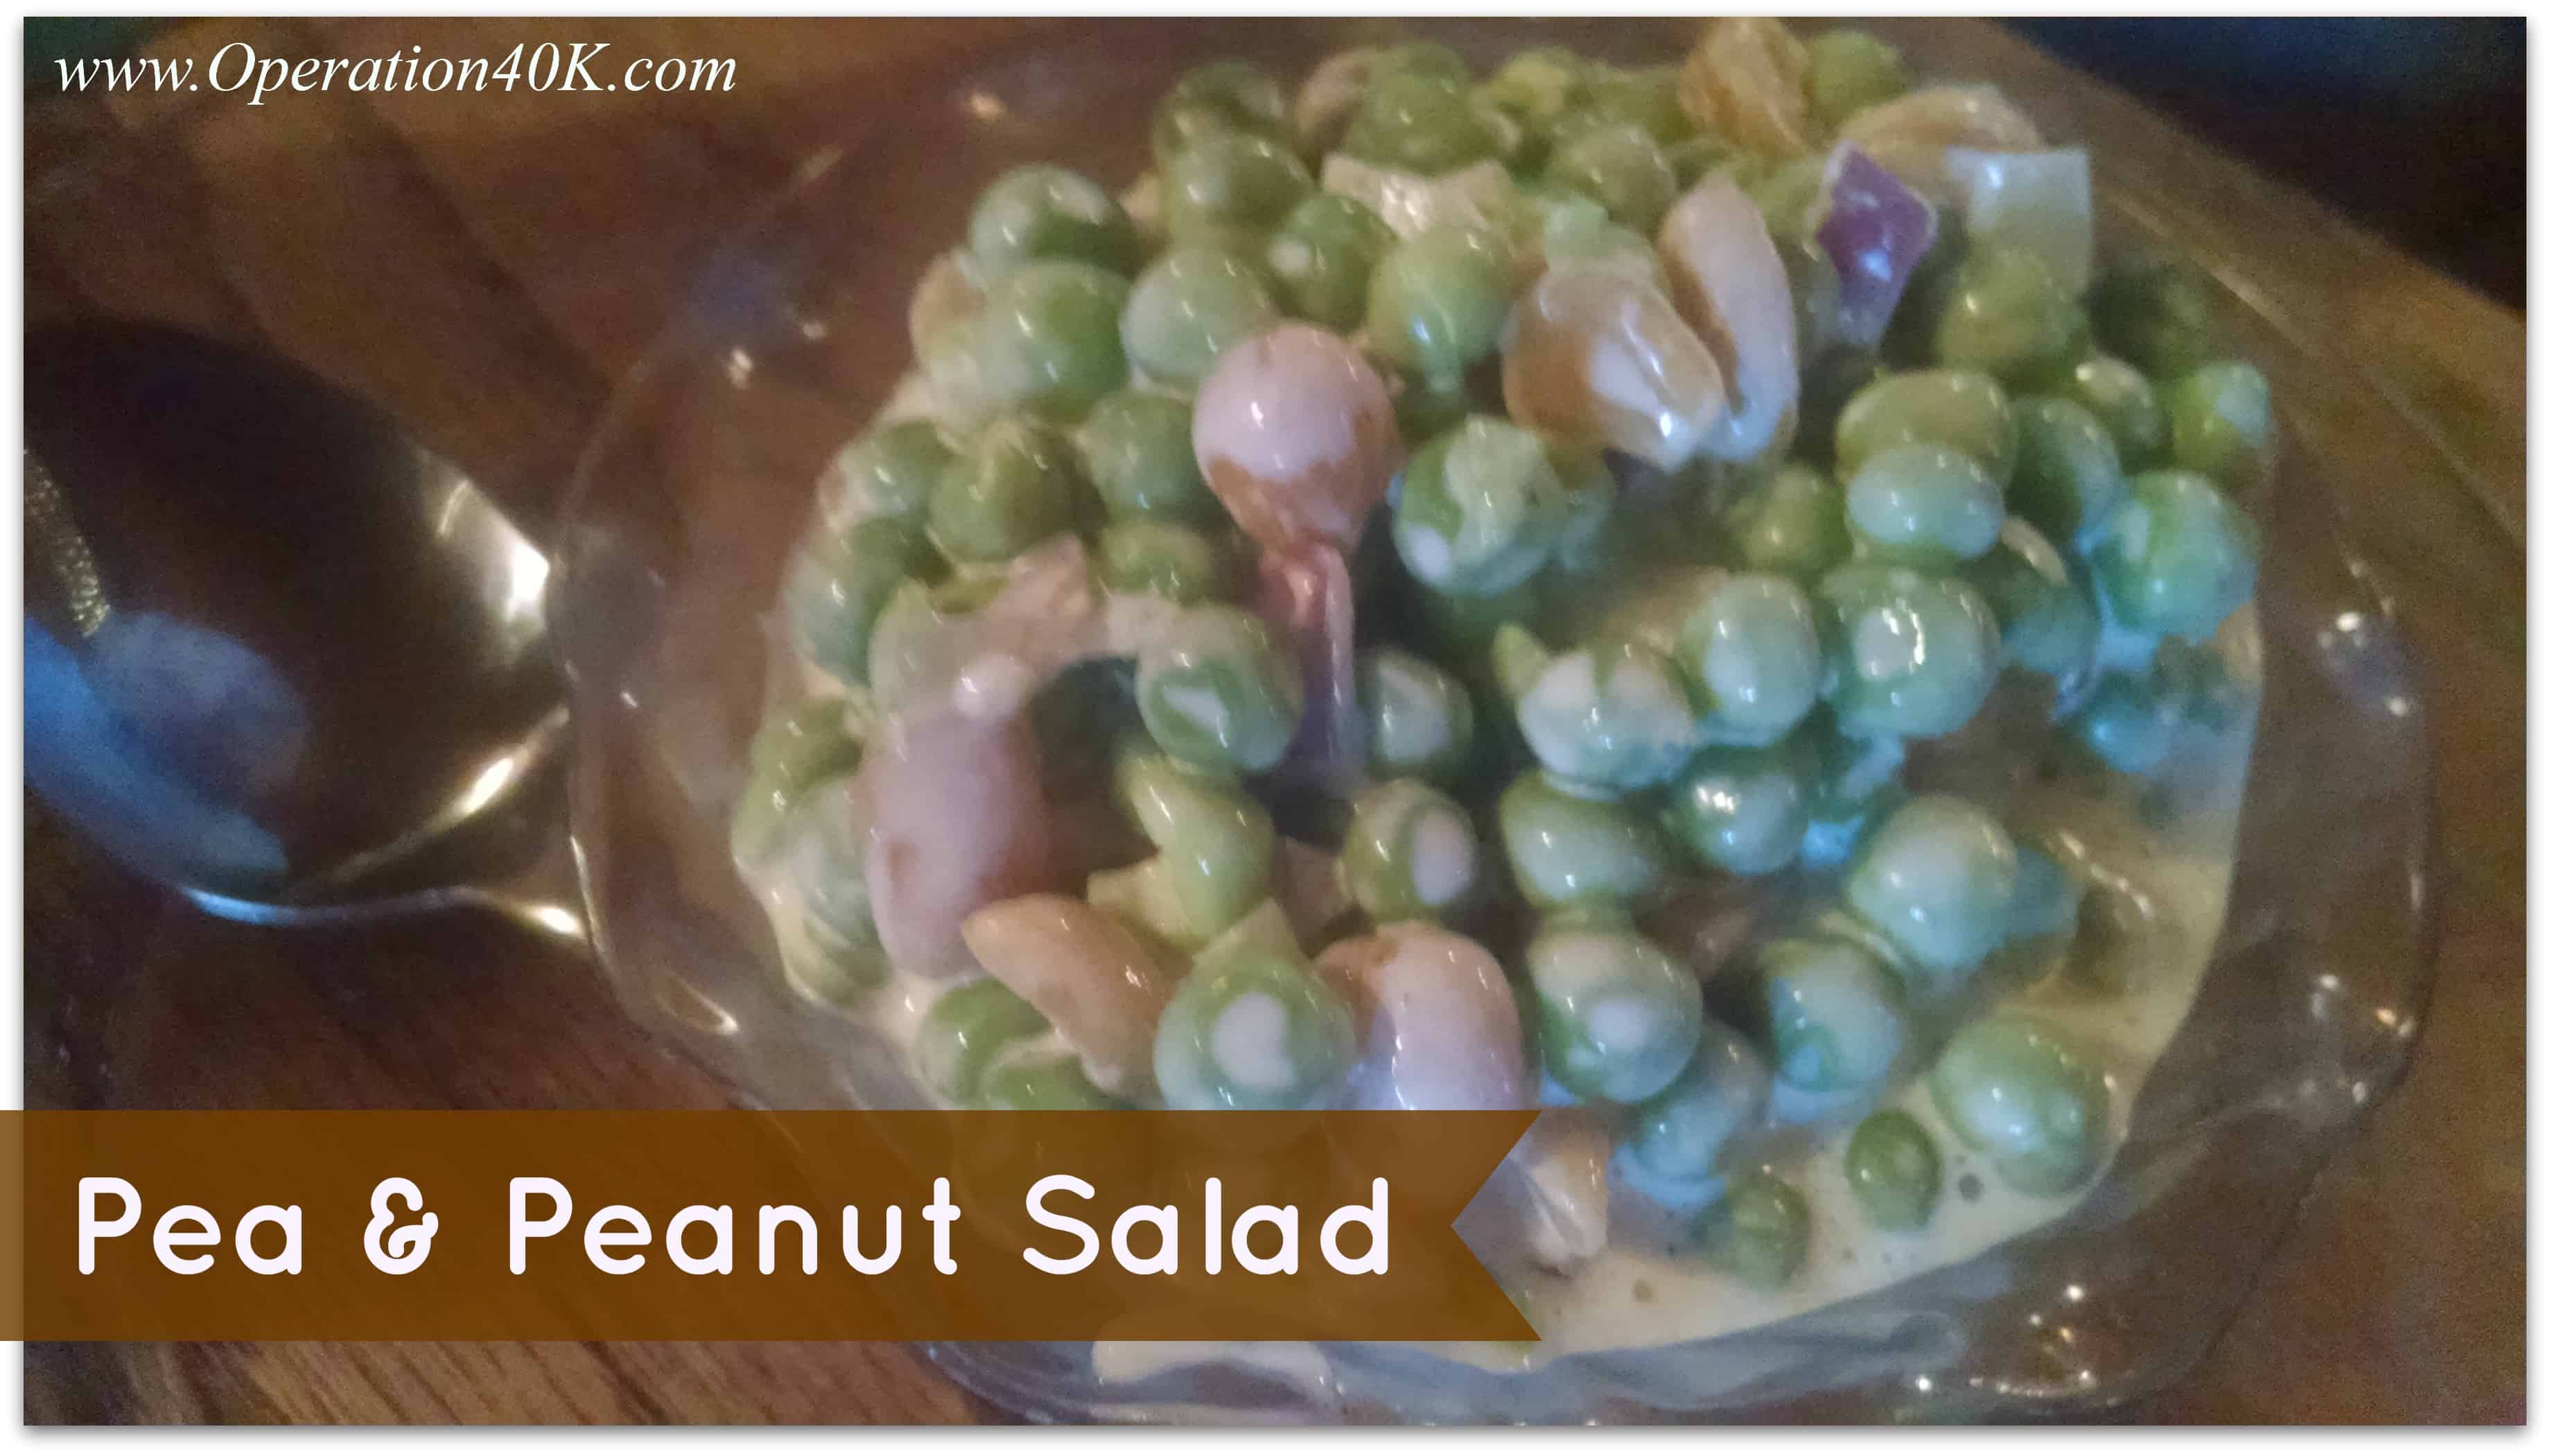 Pea and Peanut Salad